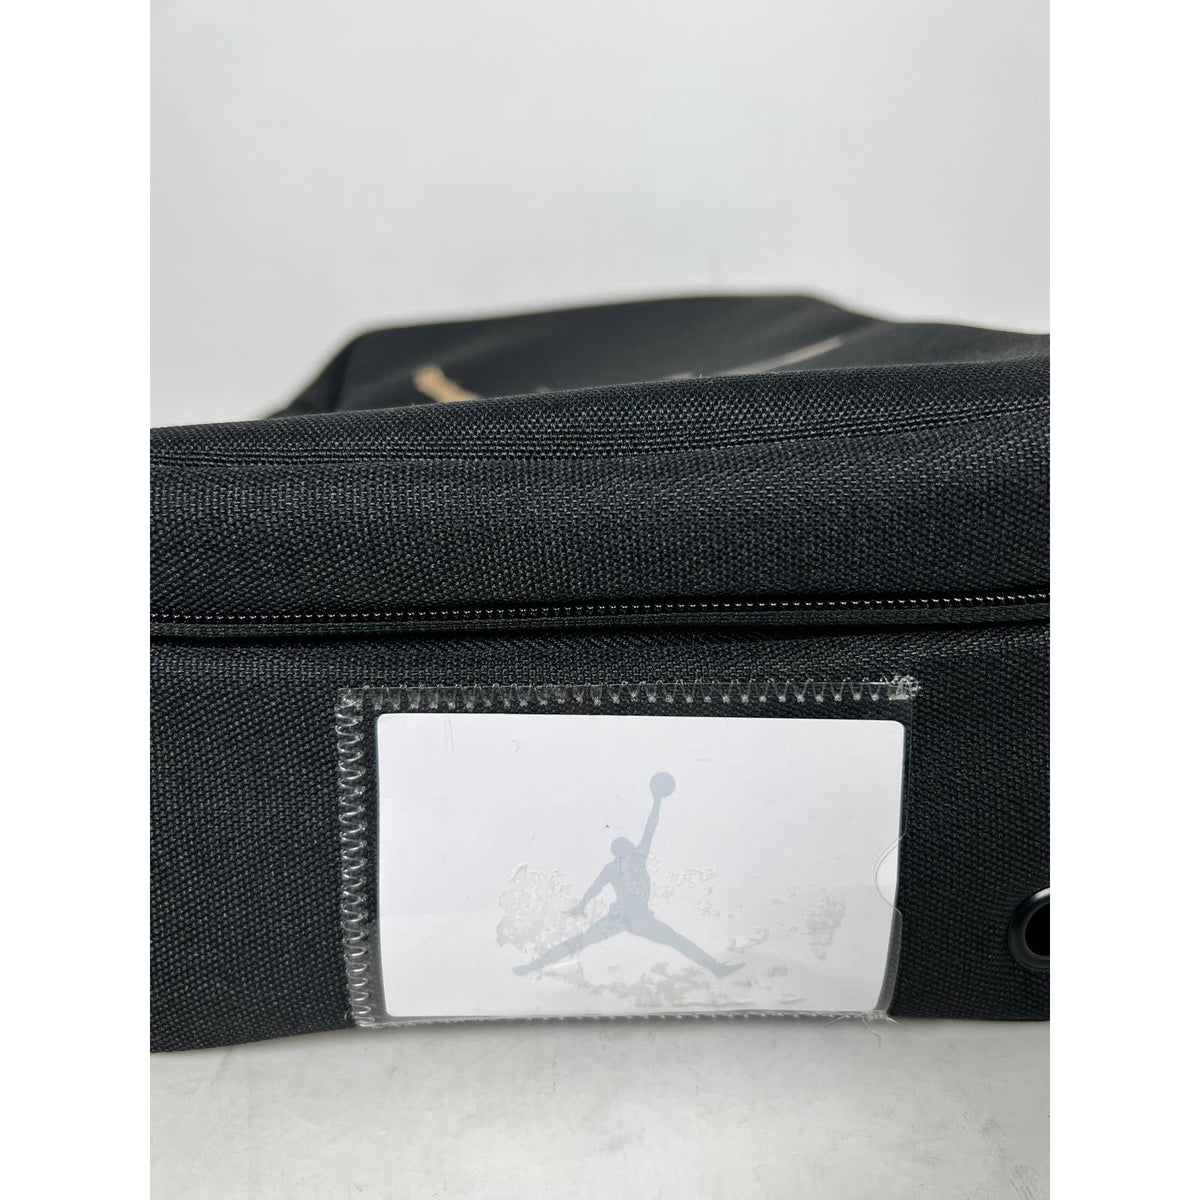 Air Jordan Shoe Bag Black and Gold